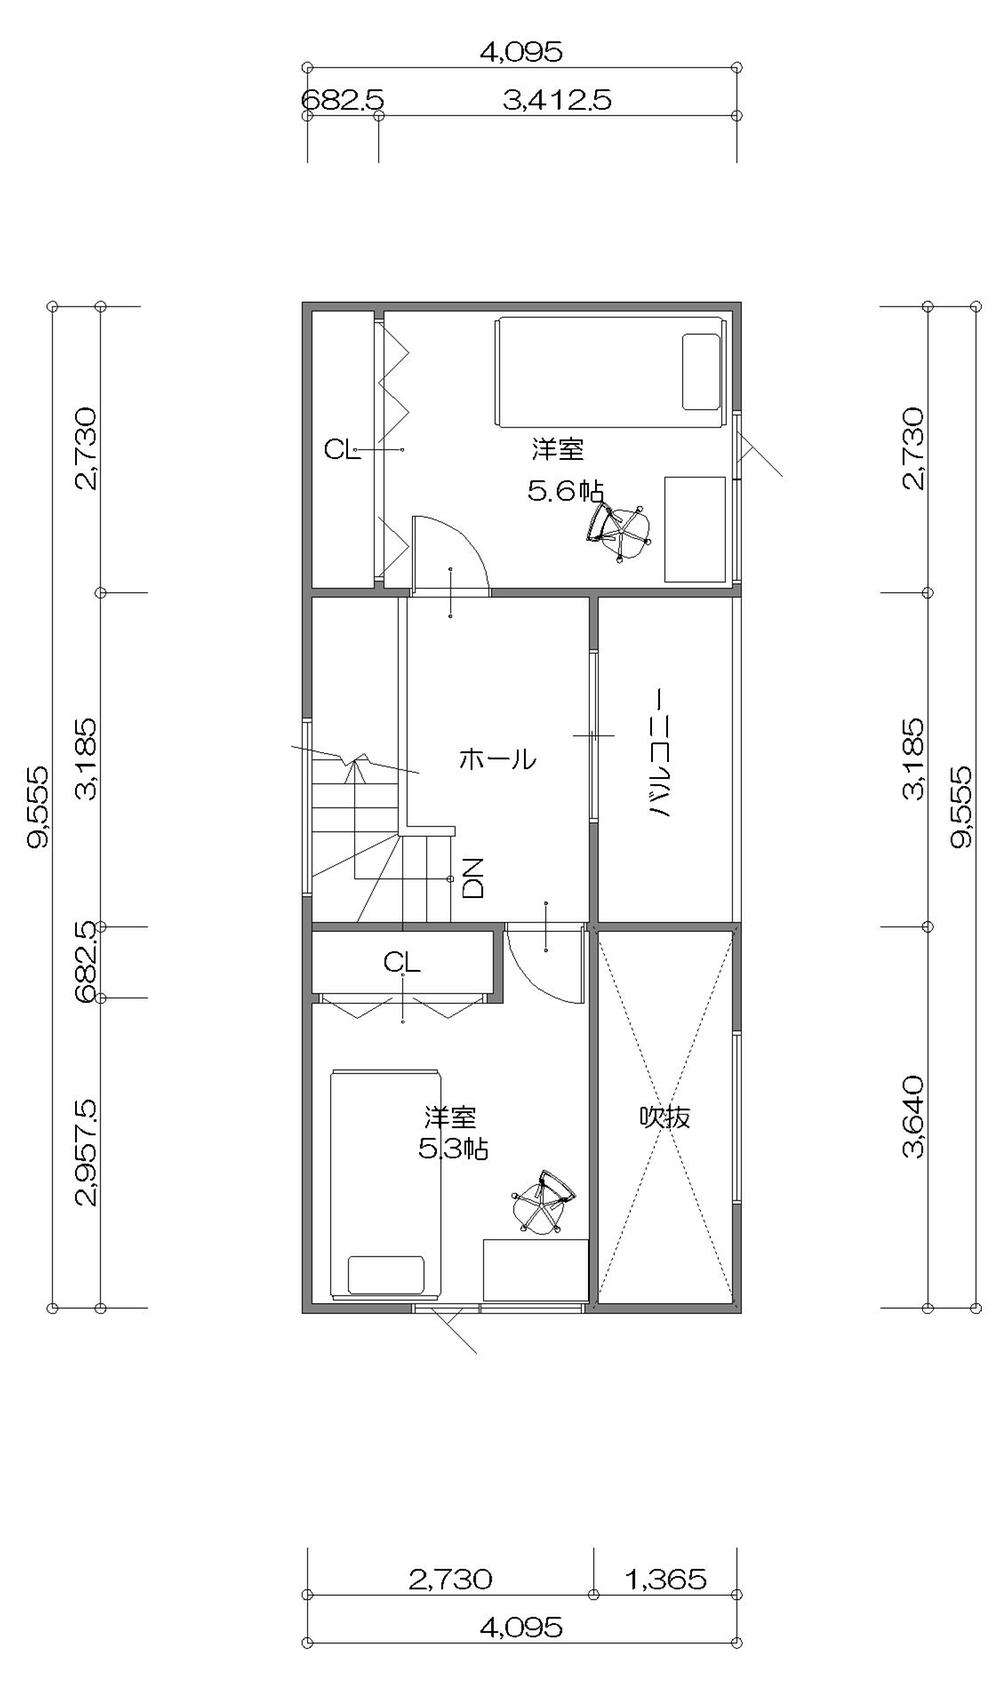 Building plan example (floor plan). 3F plan view 9.00 square meters Total floor 31.49 square meters